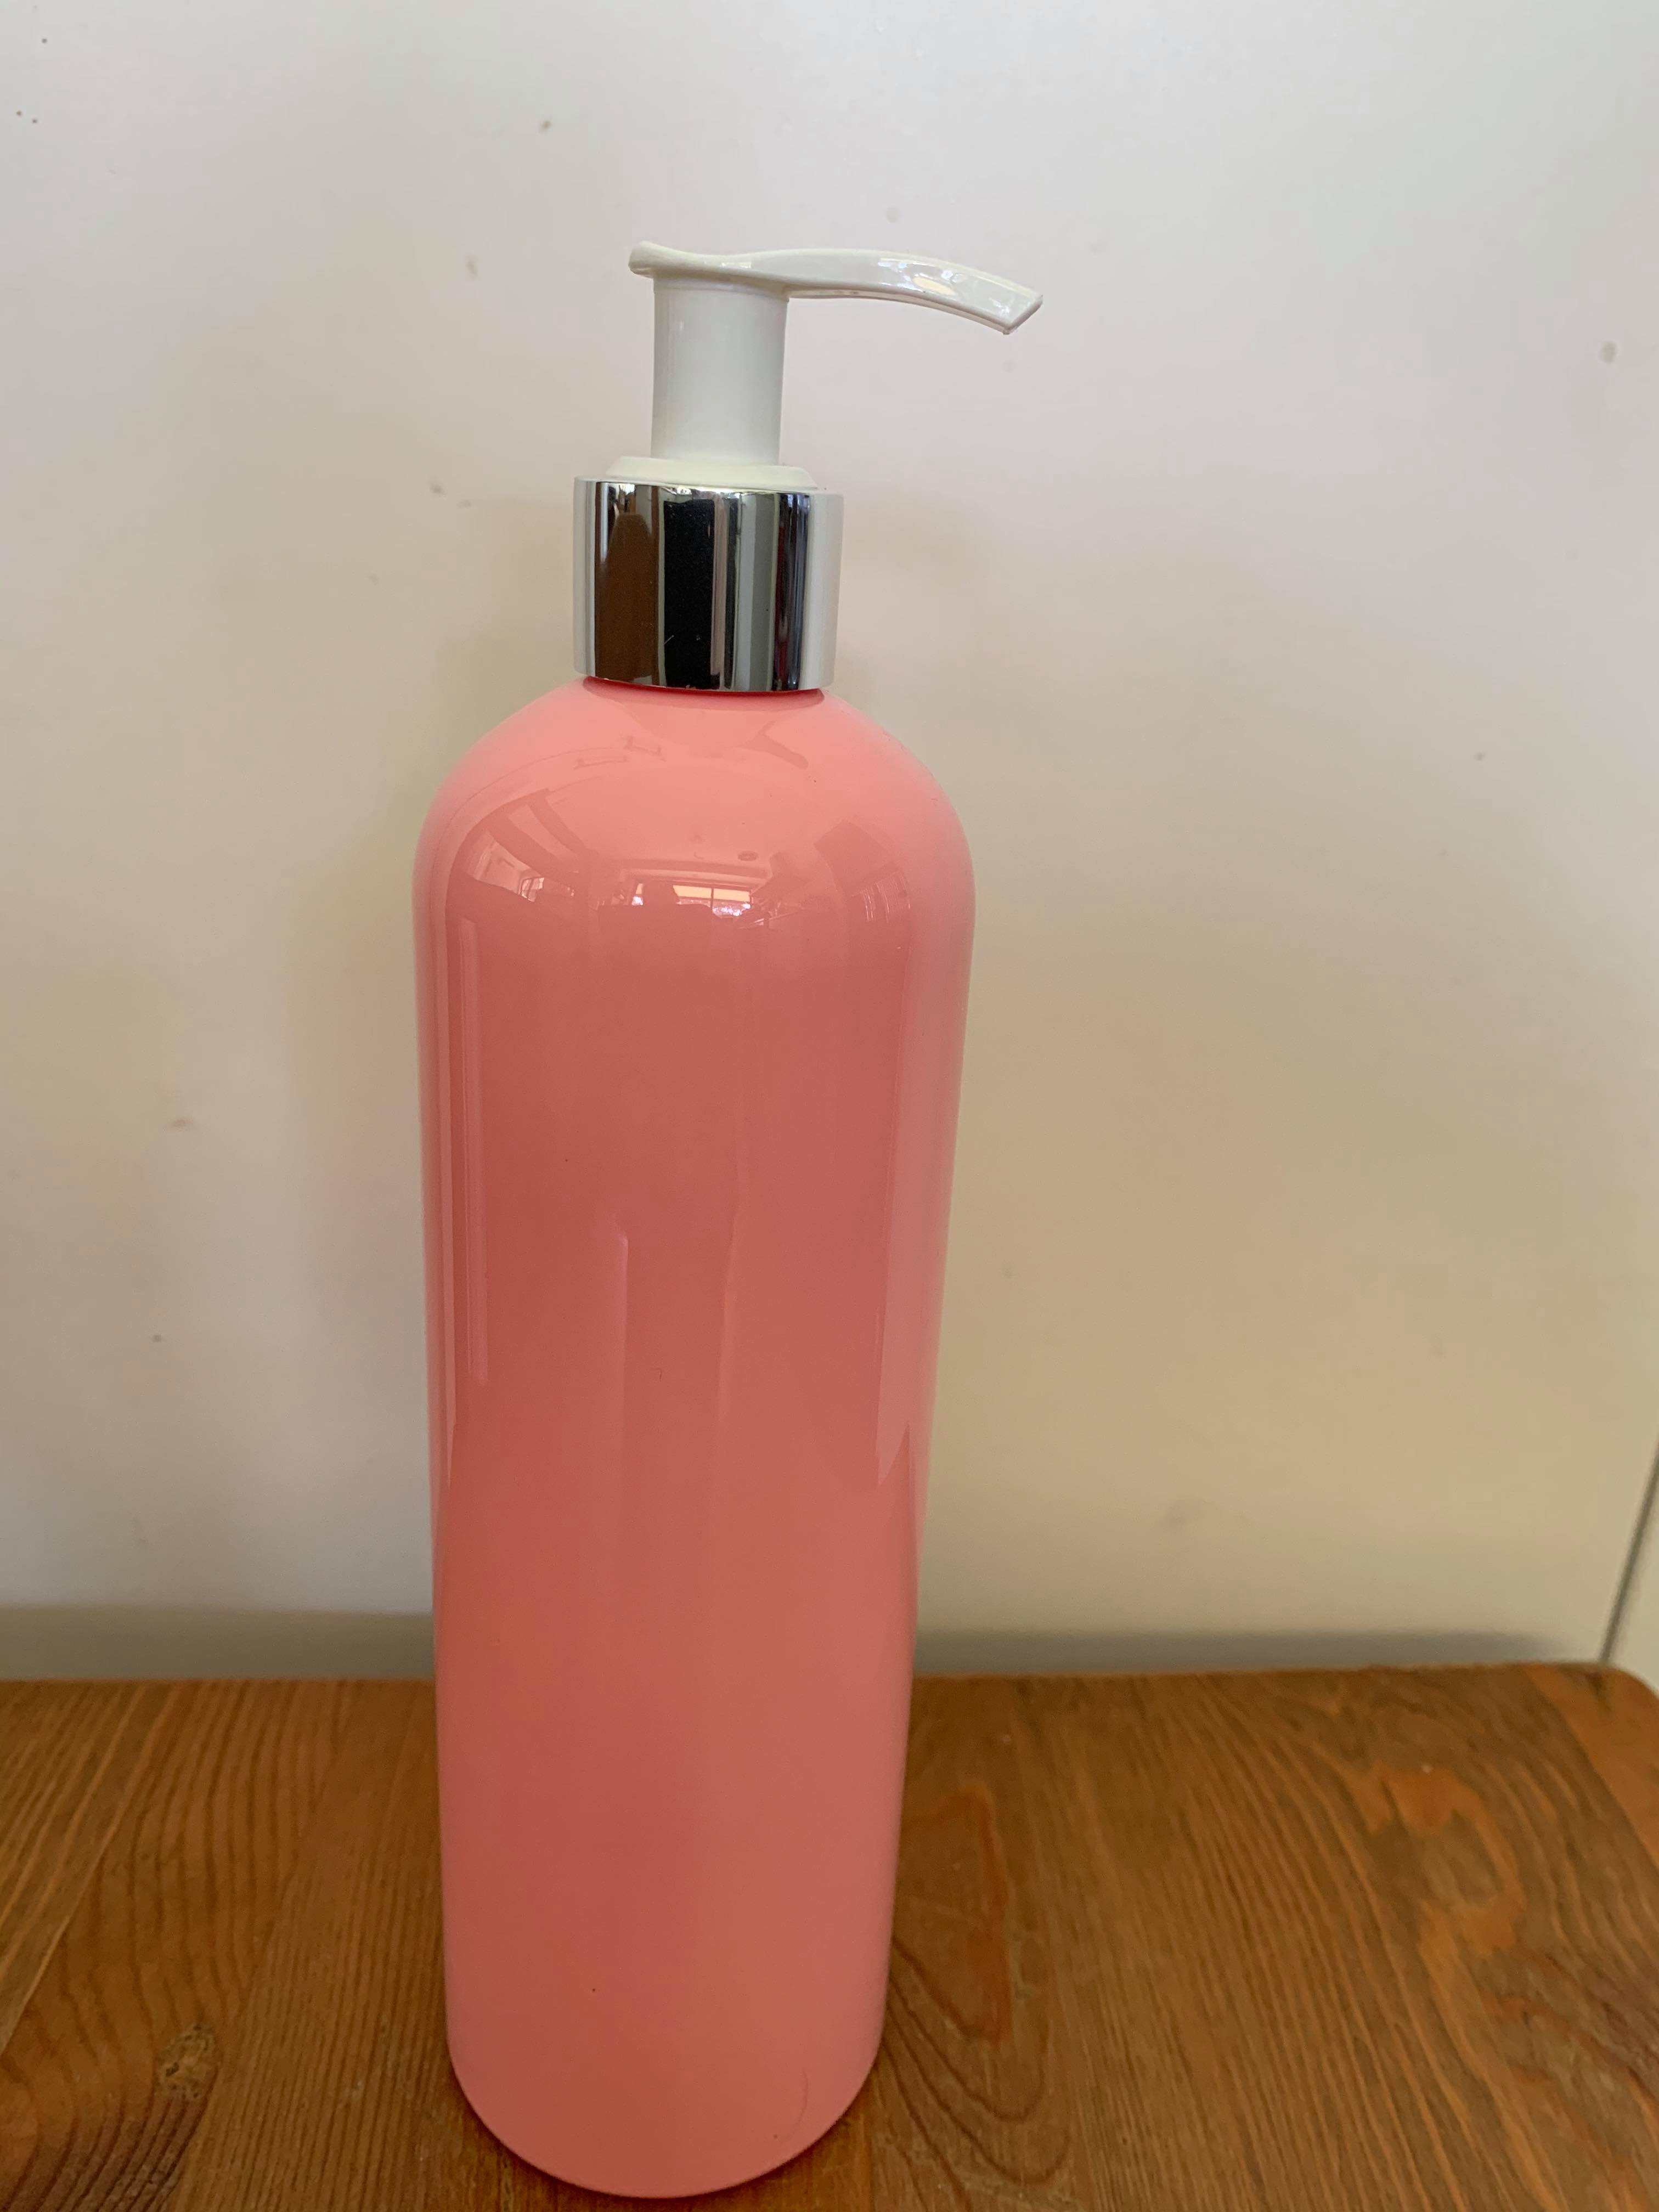 500ml Pink PET Bottles